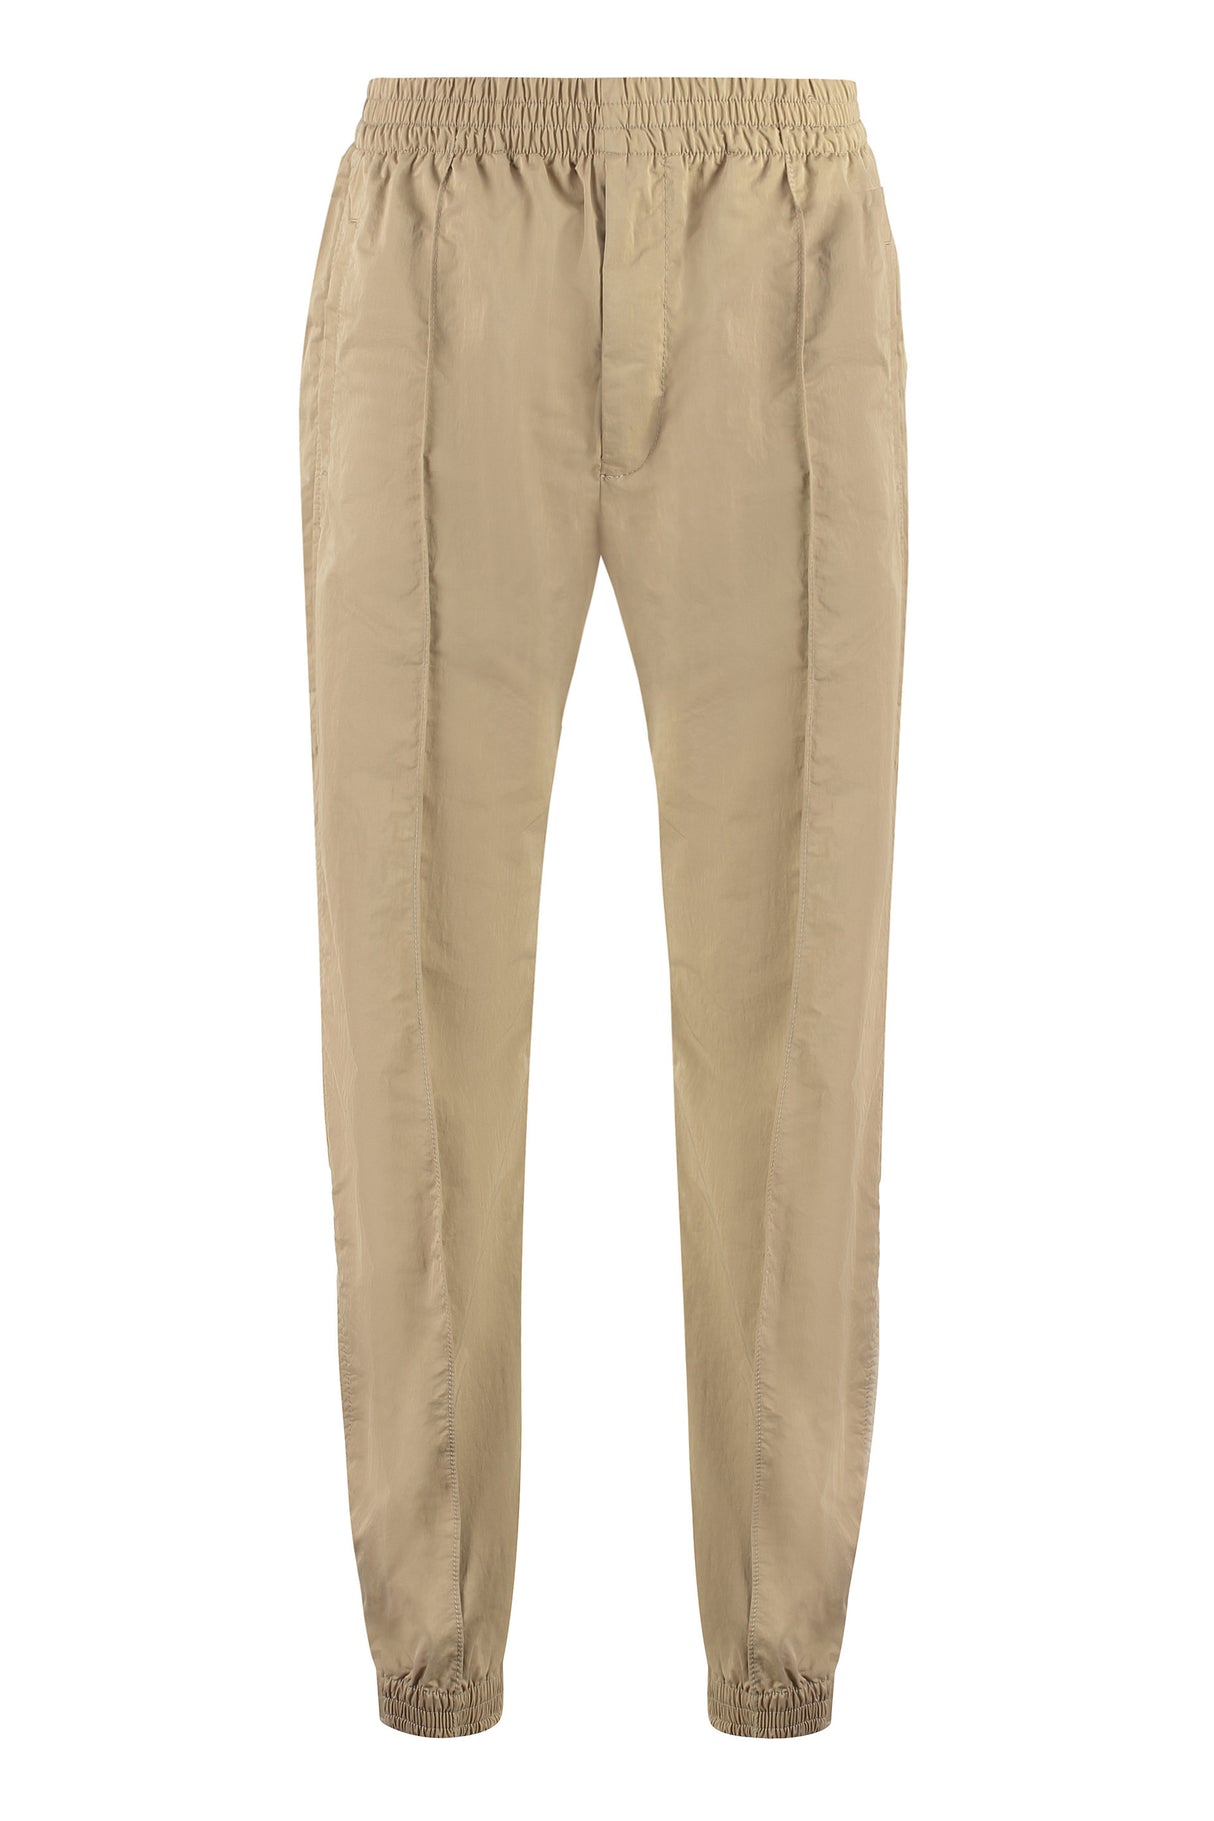 BOTTEGA VENETA Beige Elasticated Waist Trousers for Men - FW23 Collection